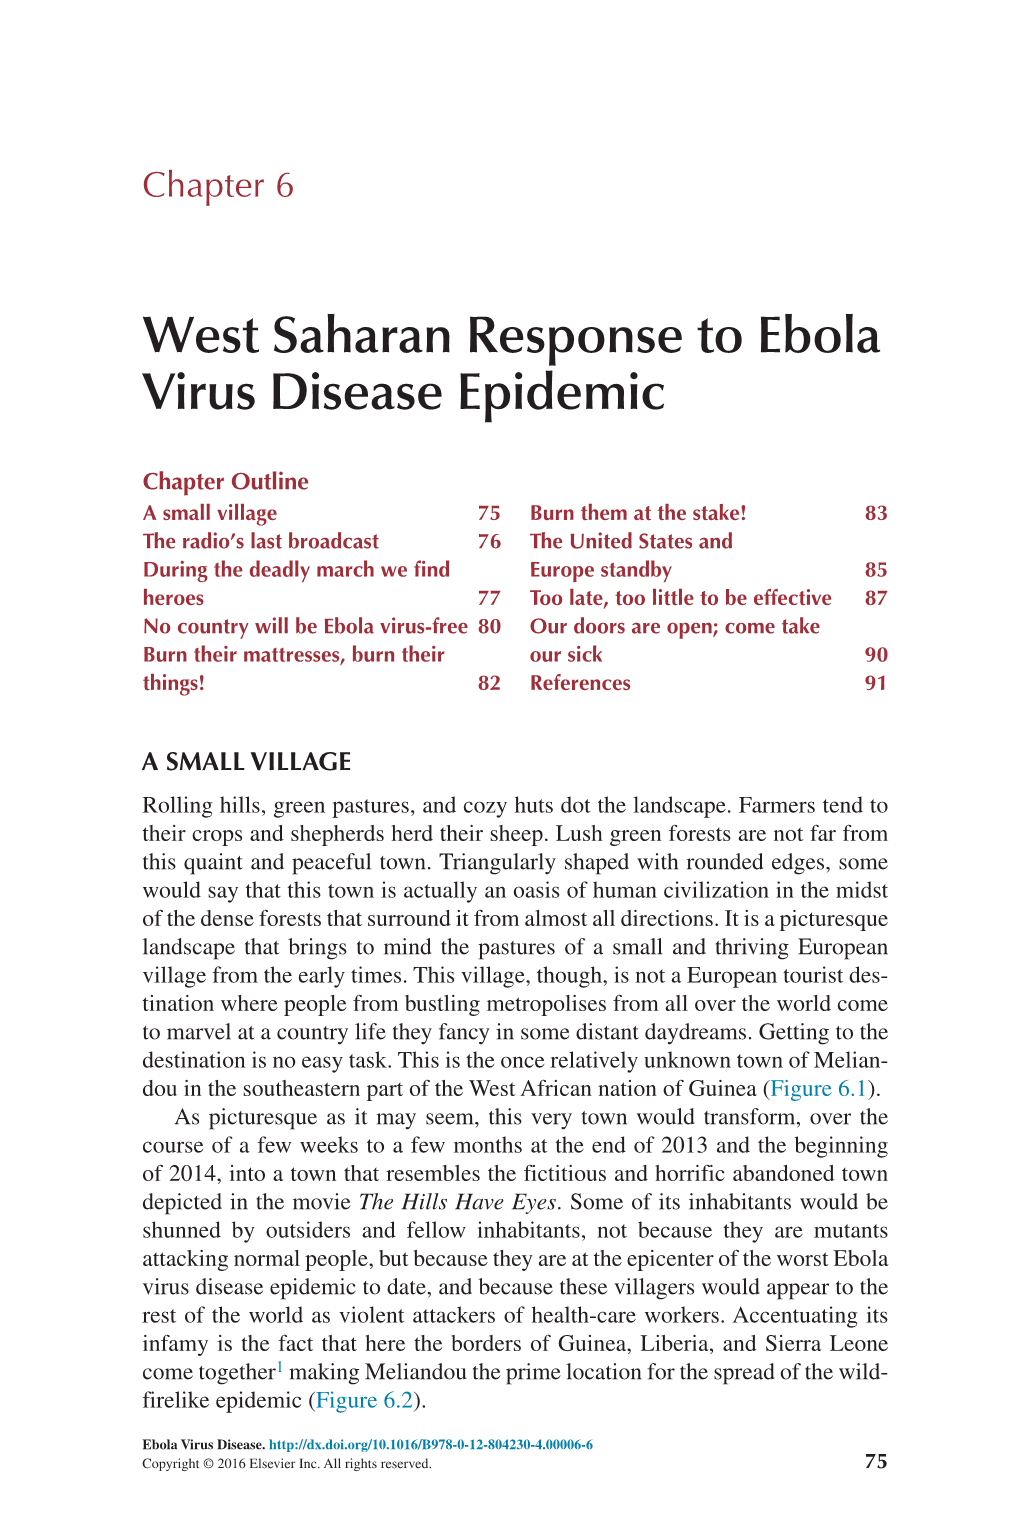 West Saharan Response to Ebola Virus Disease Epidemic